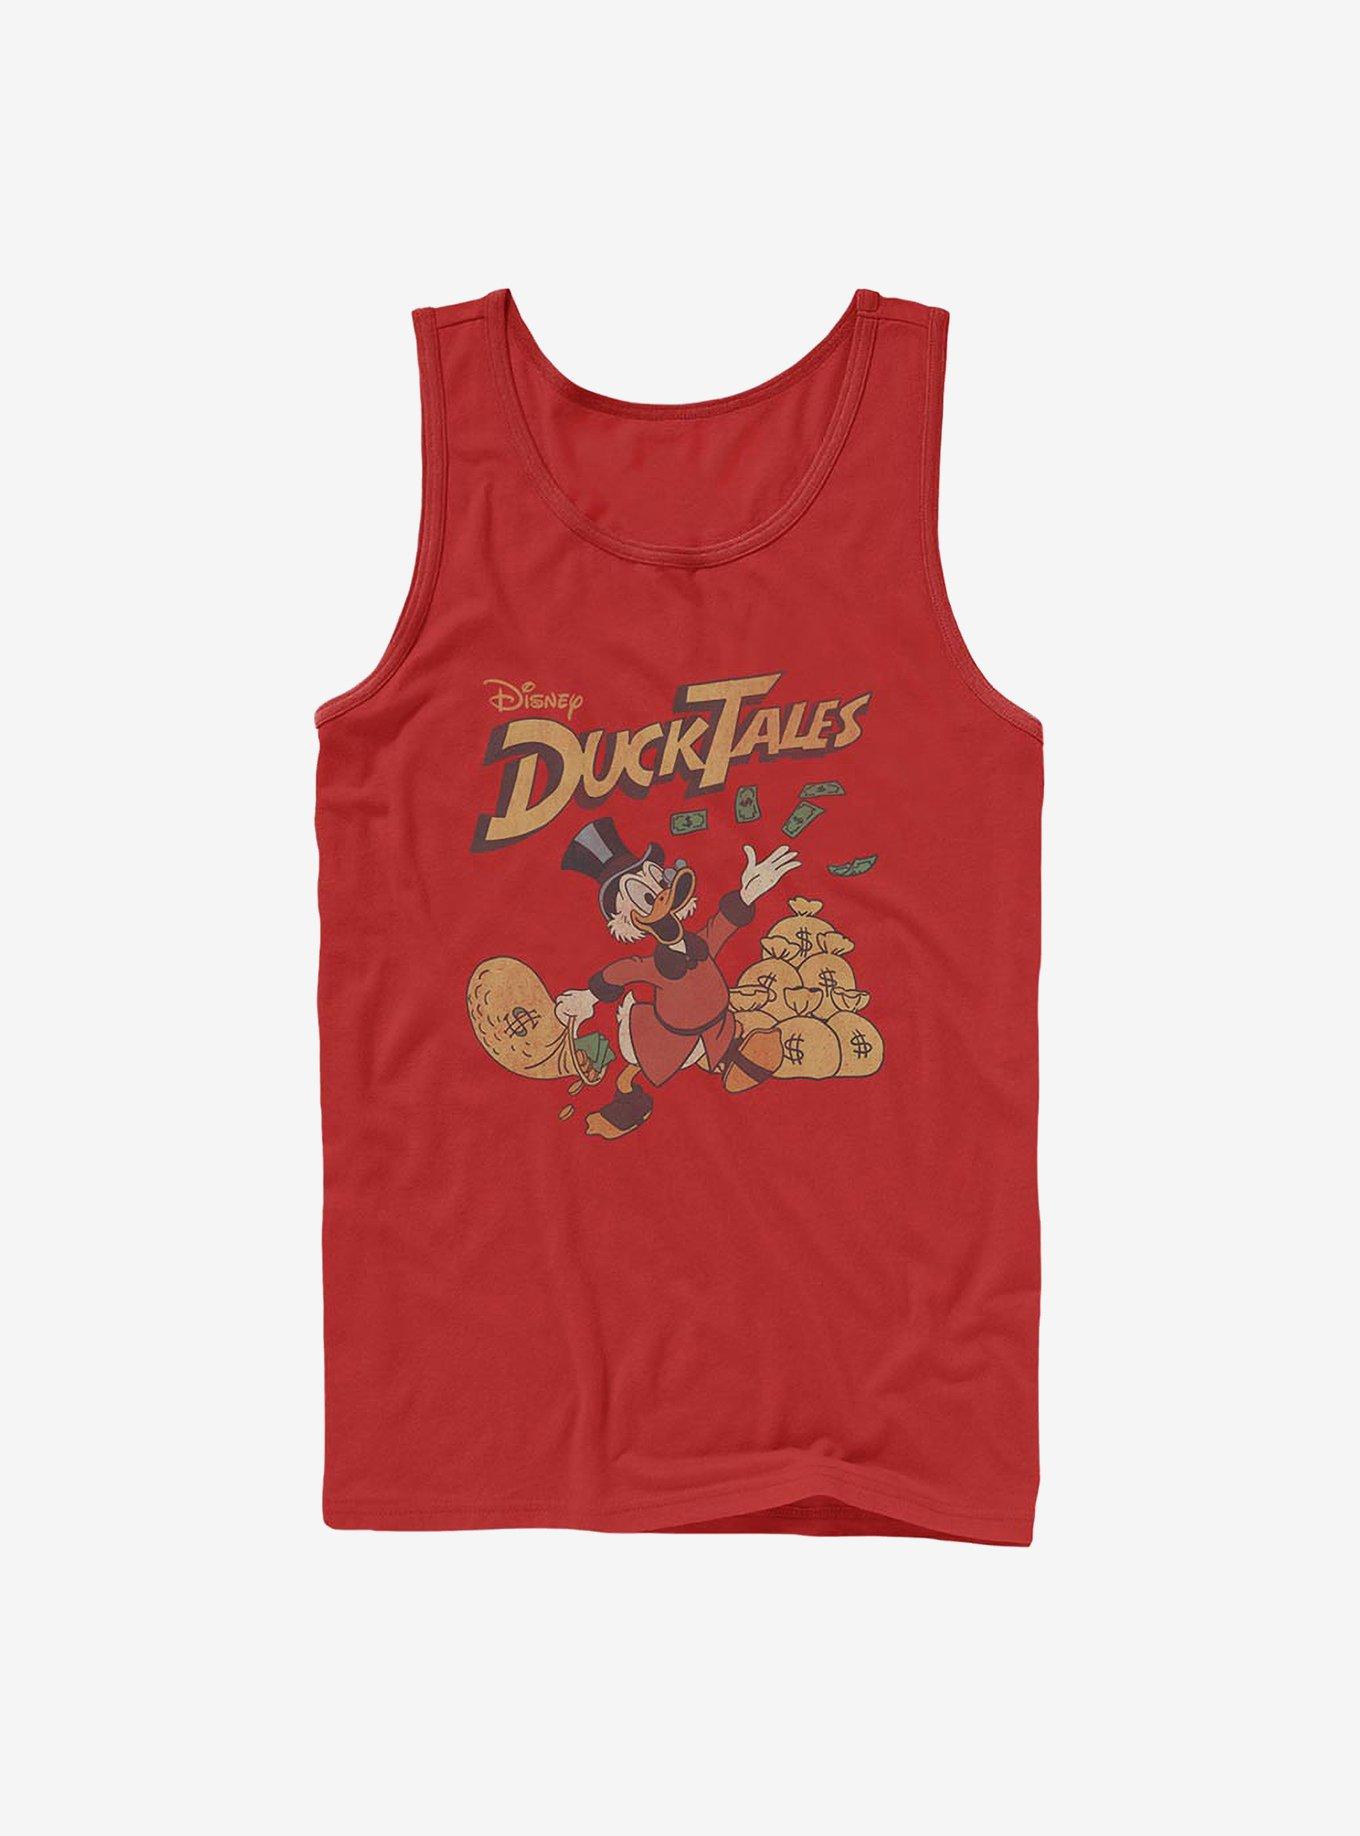 Disney Ducktales Scrooge Throwing Dollars Tank, RED, hi-res